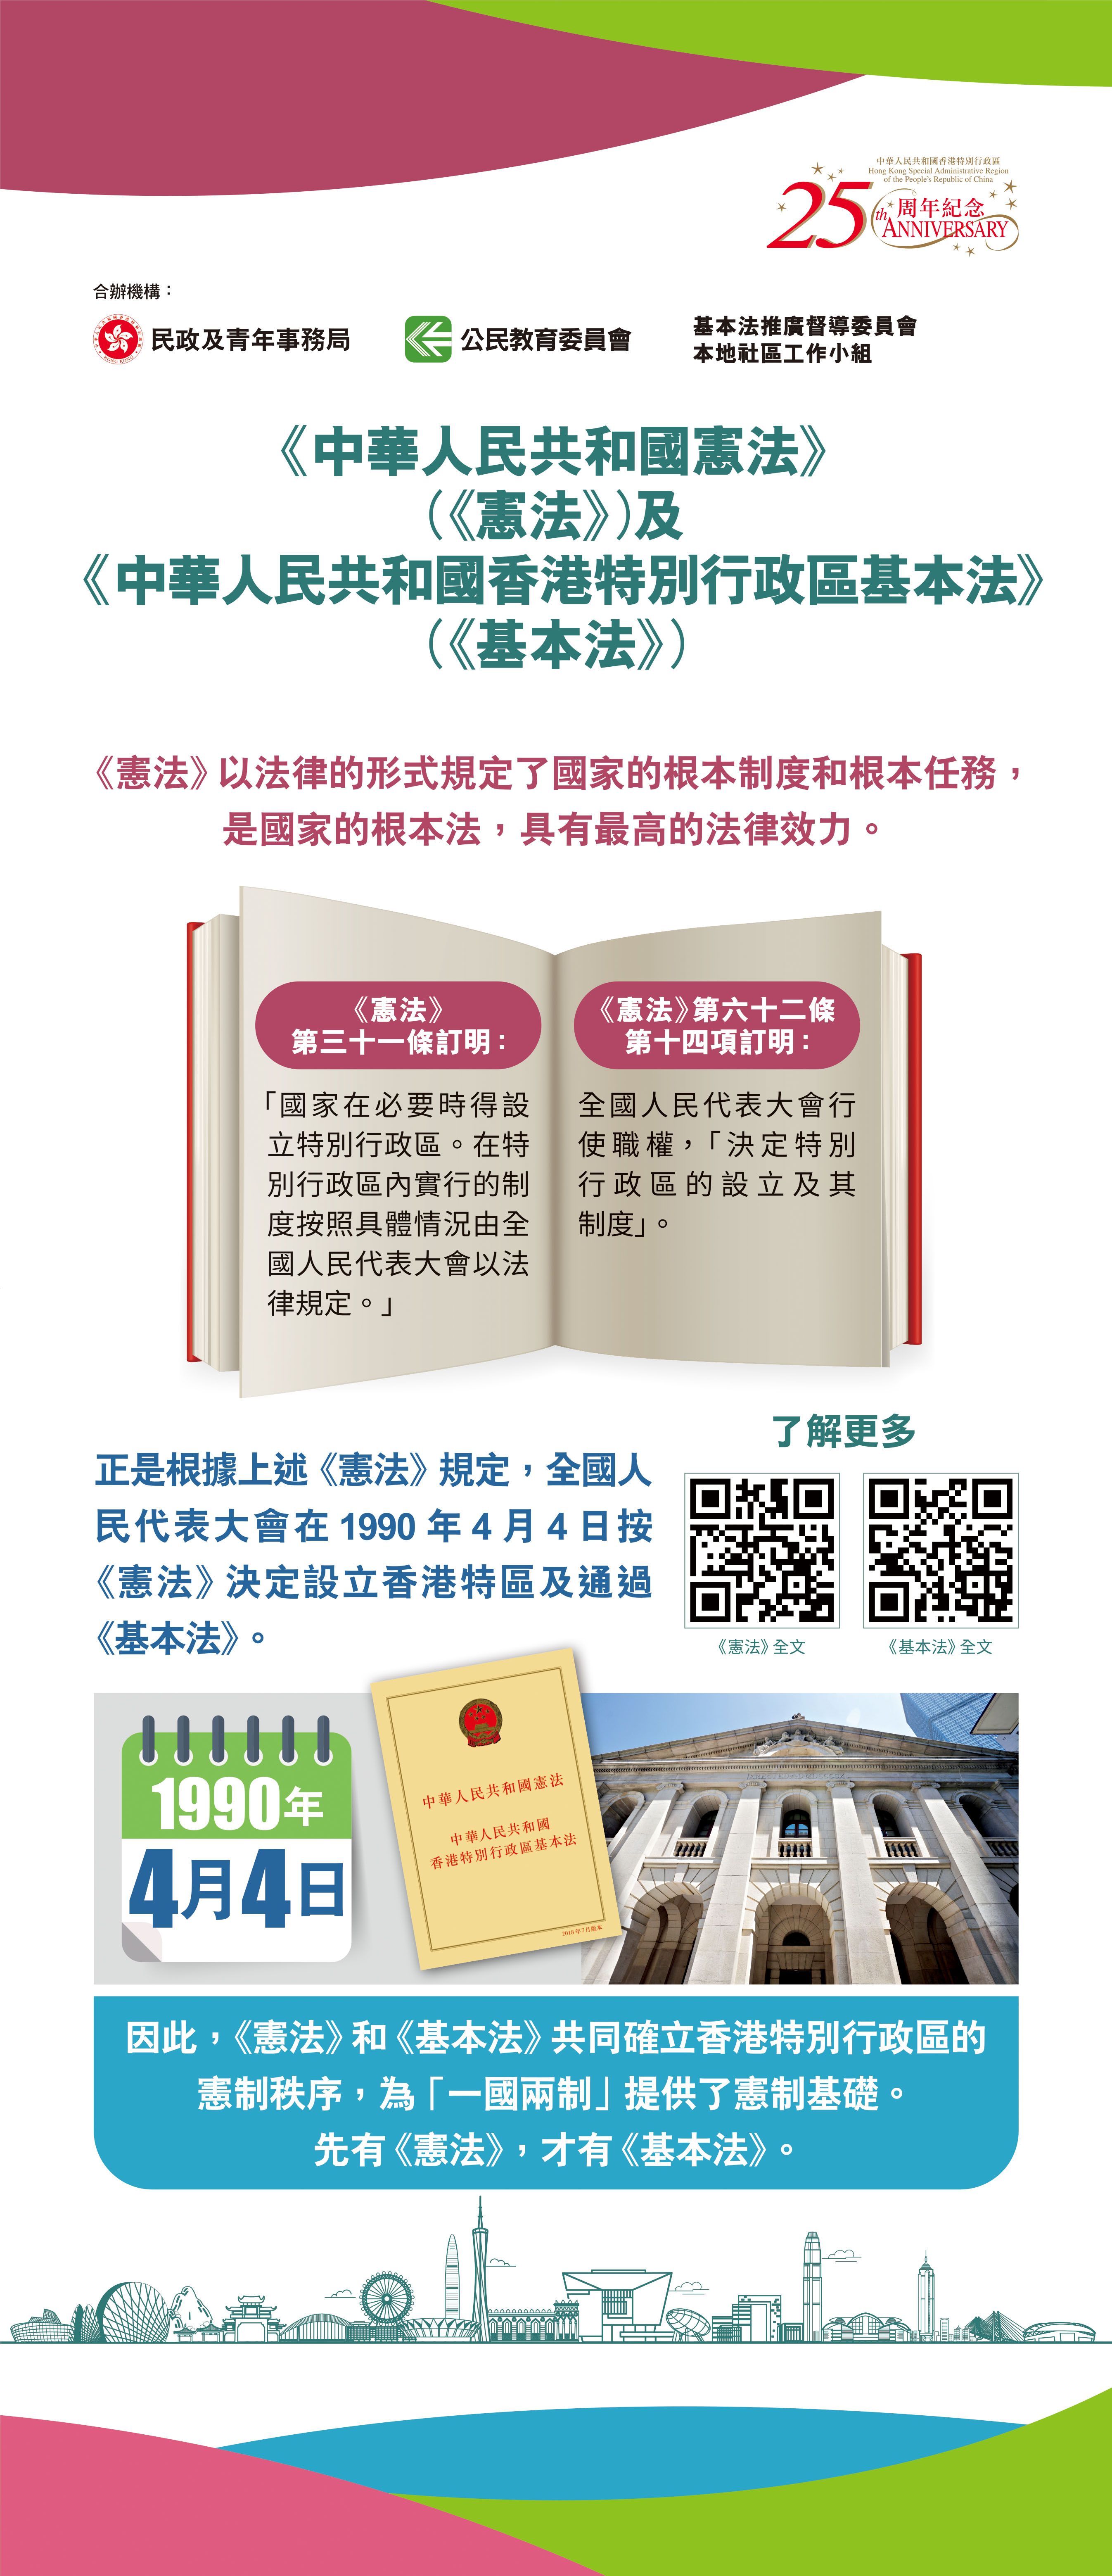 《中華人民共和國憲法》（《憲法》）及《中華人民共和國香港特別行區基本法》（《基本法》）